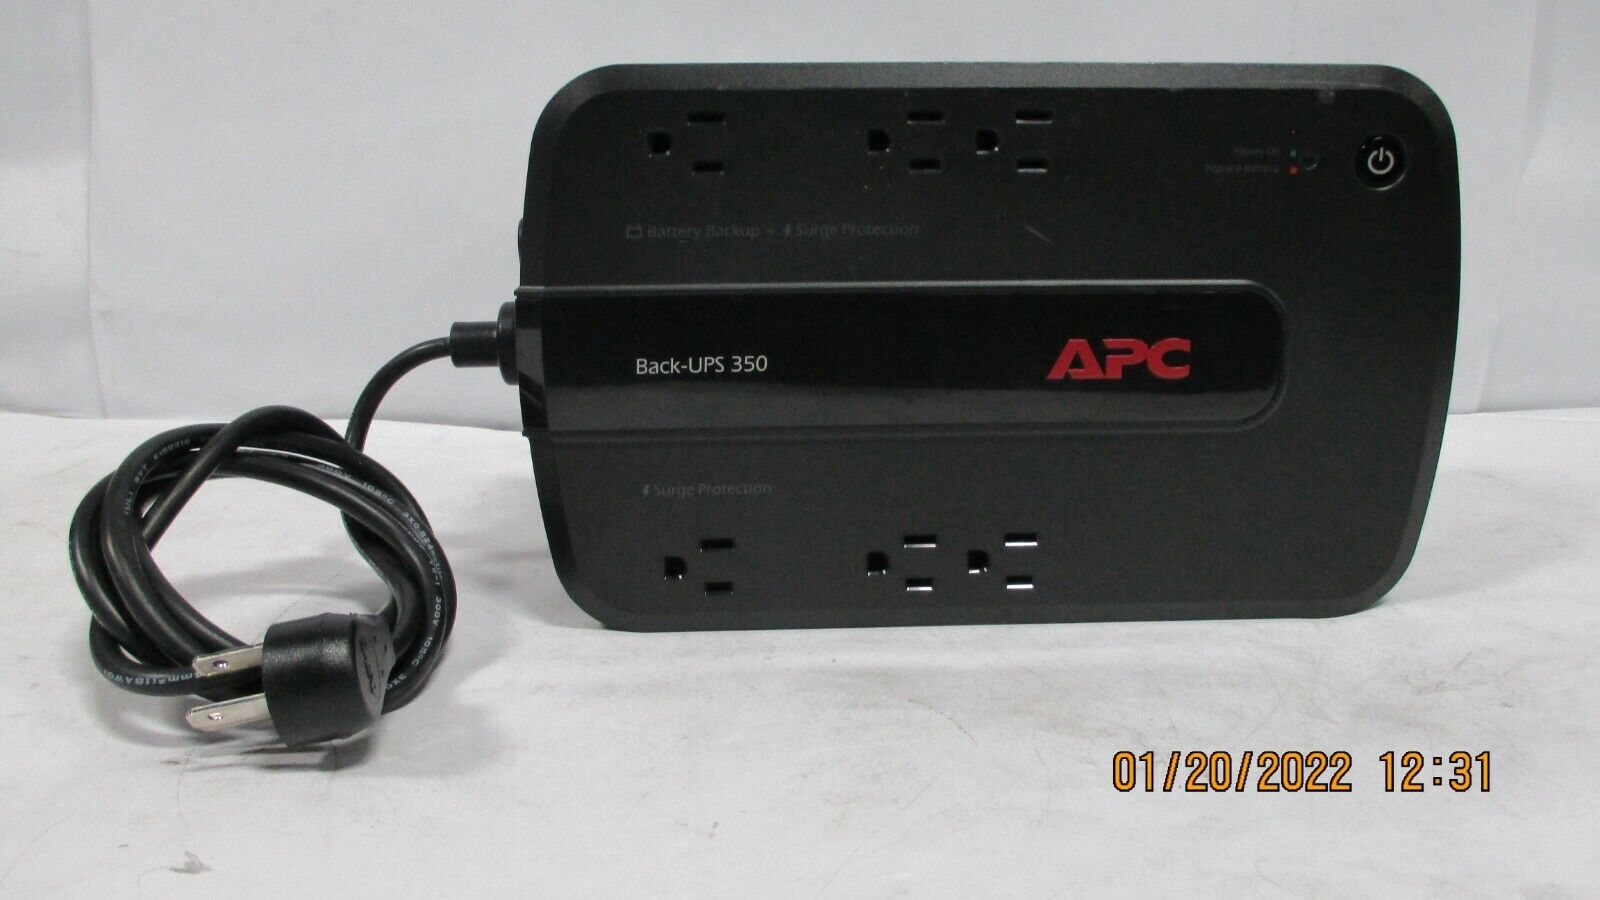 APC Back-UPS 350 (BE350G) Battery Backup Surge Protector - NO BATTERY